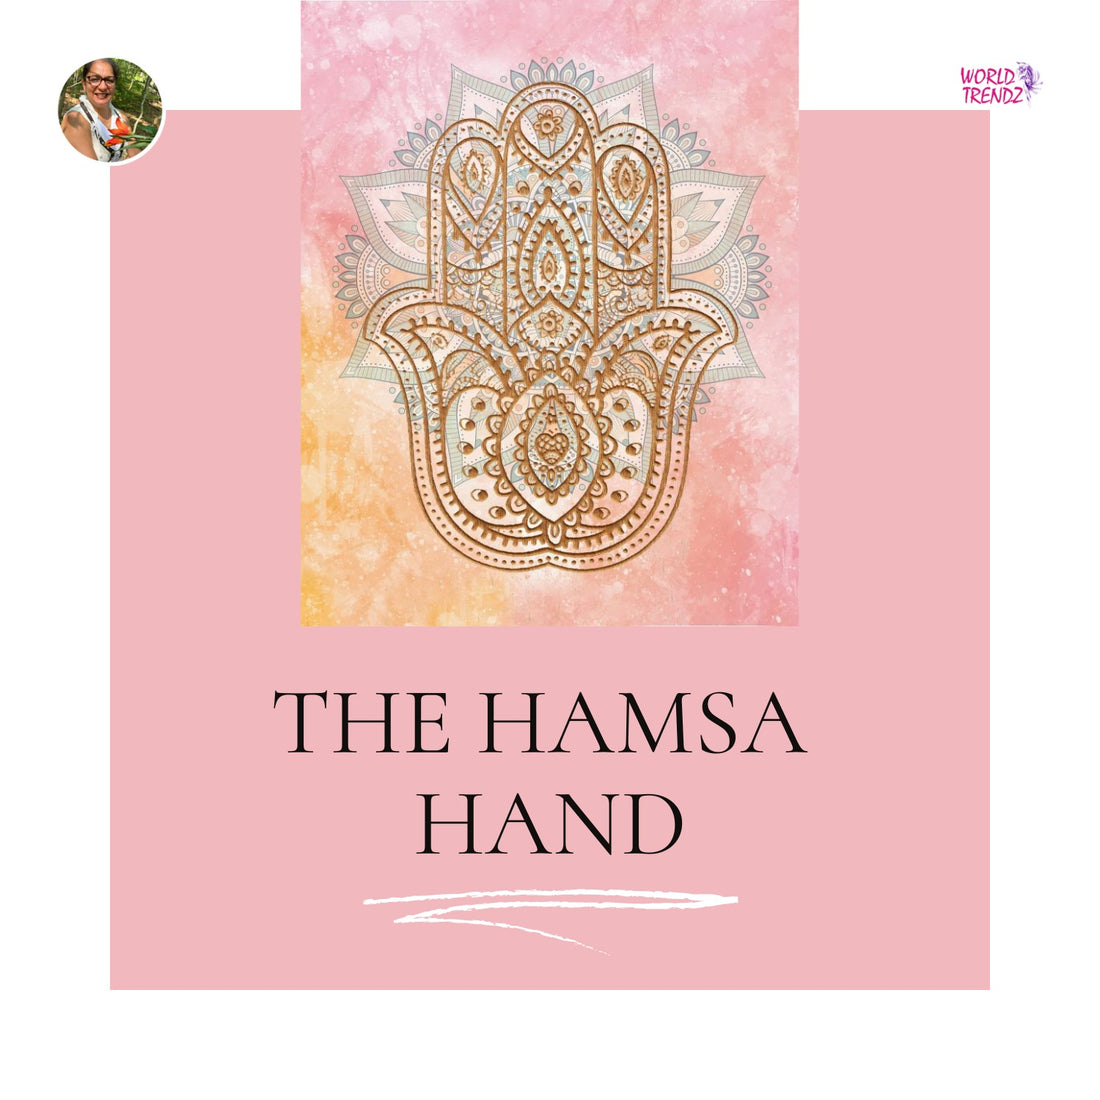 The History of The Hamsa Hand